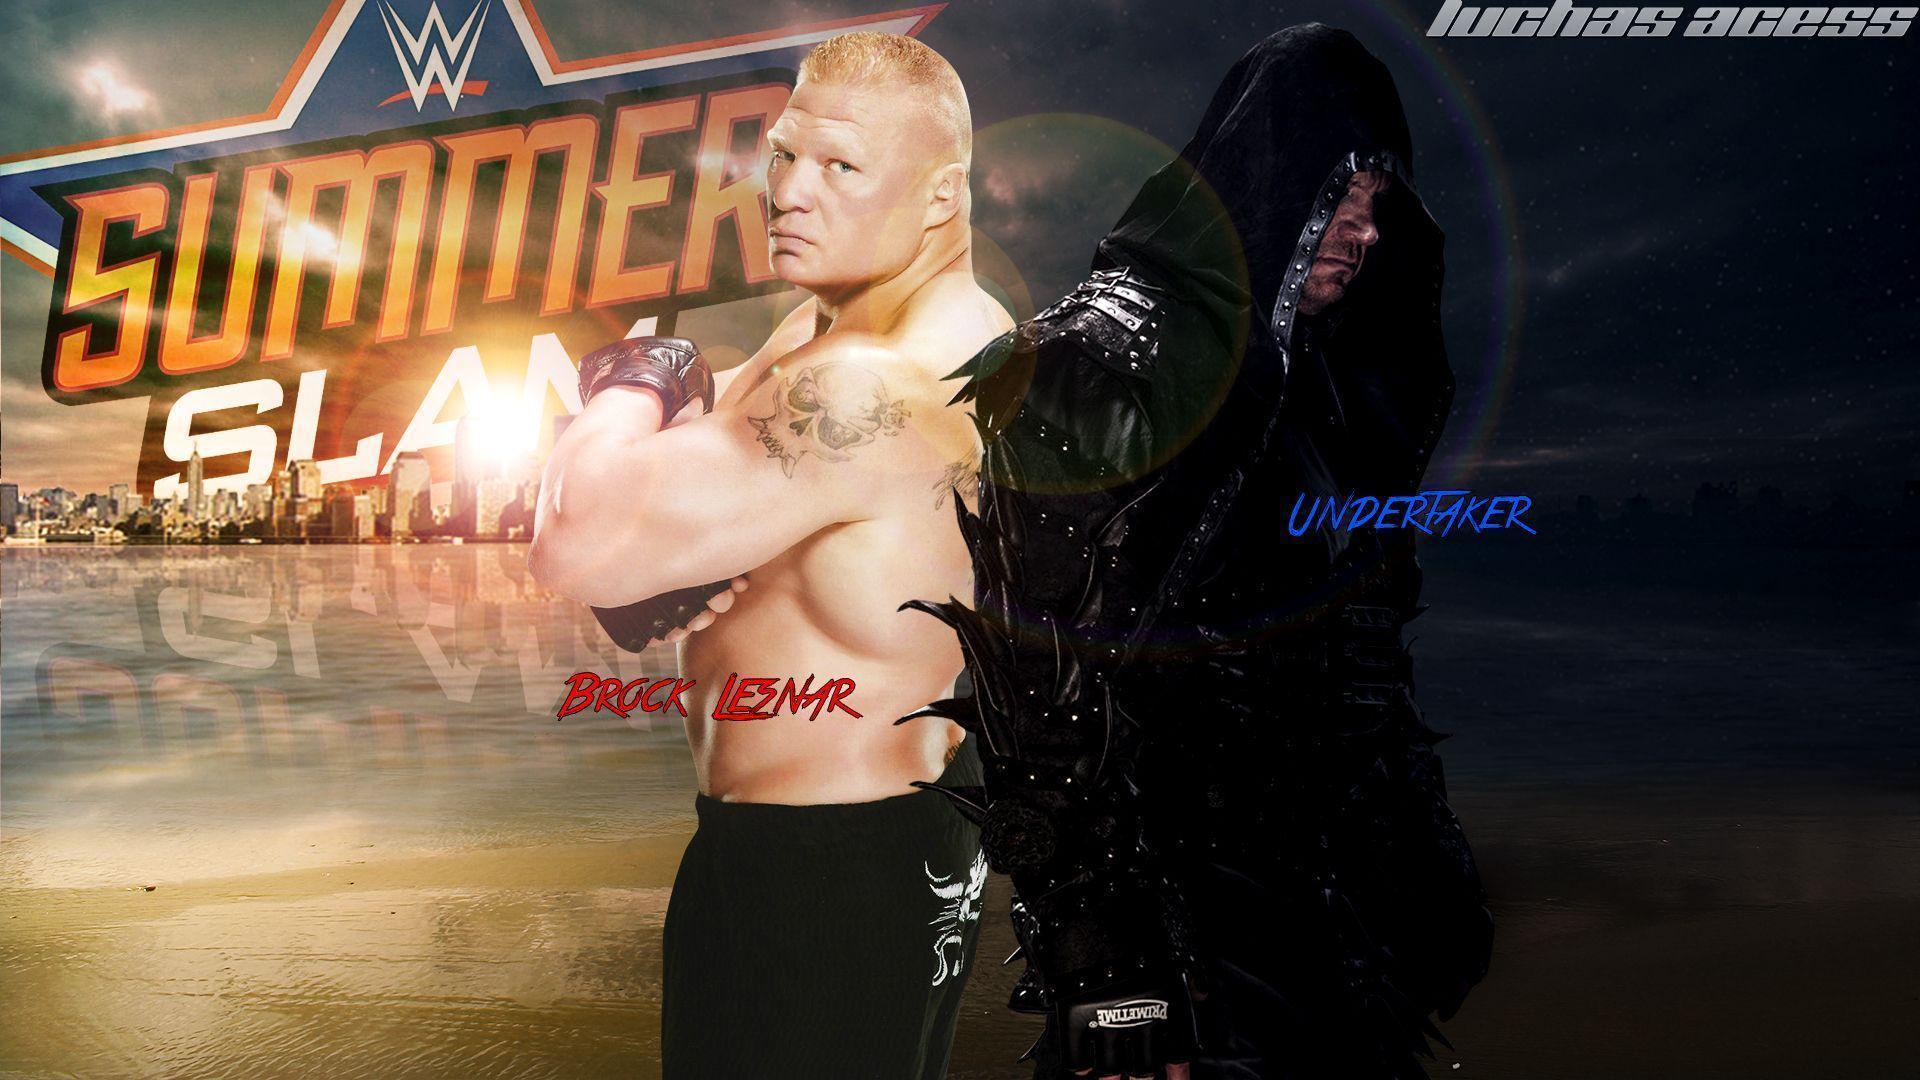 Wwe Summerslam 2015 John Cena Vs Brock Lesnar Wallpaper